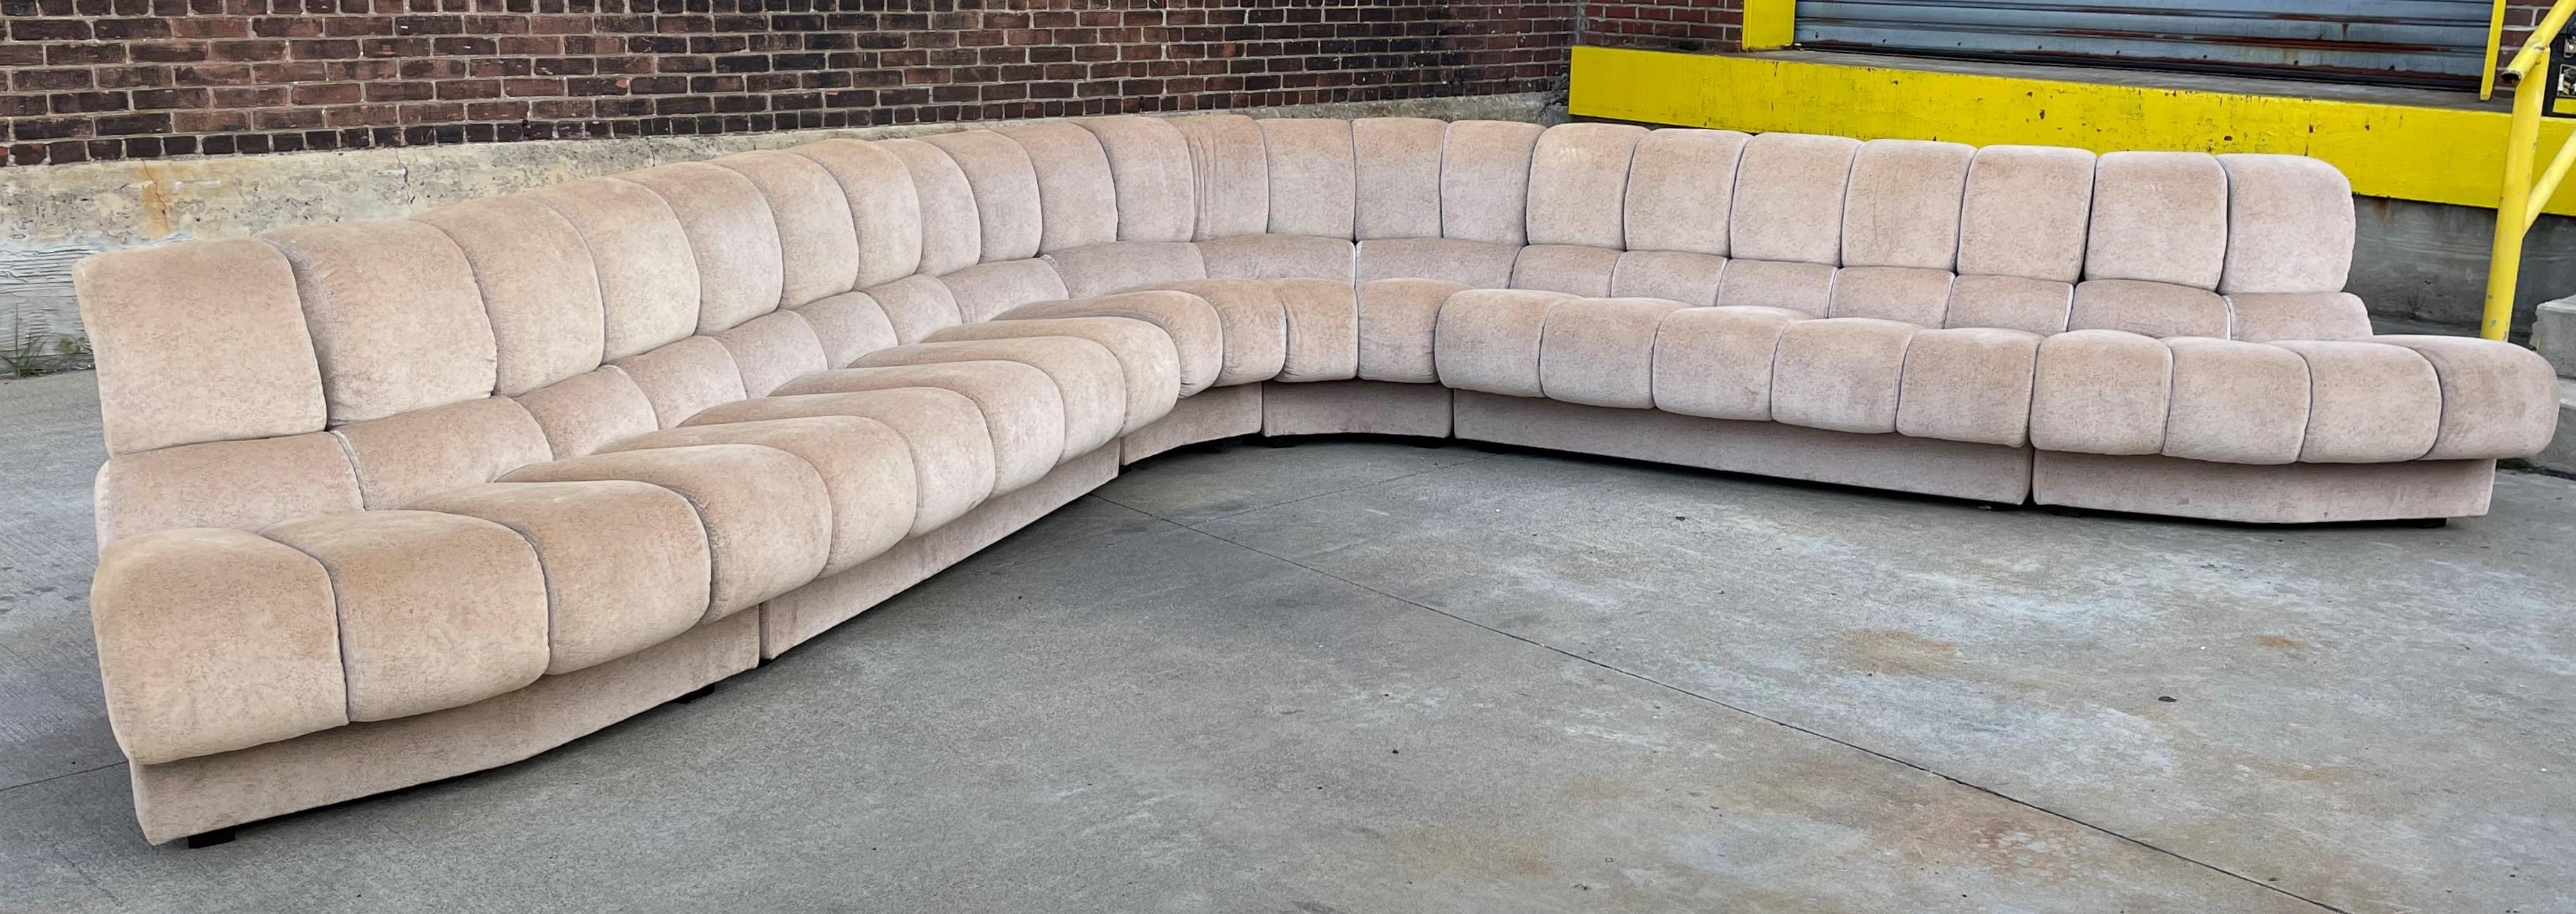 1960er Jahre 6 Stück Sektionssofa. Dieses Sektionssofa hat den Originalstoff und Holzbeine. Das Sofa ist modular aufgebaut und kann auf verschiedene Weise zusammengestellt werden. Dieses Sofa ist sehr bequem.
Maße: 31